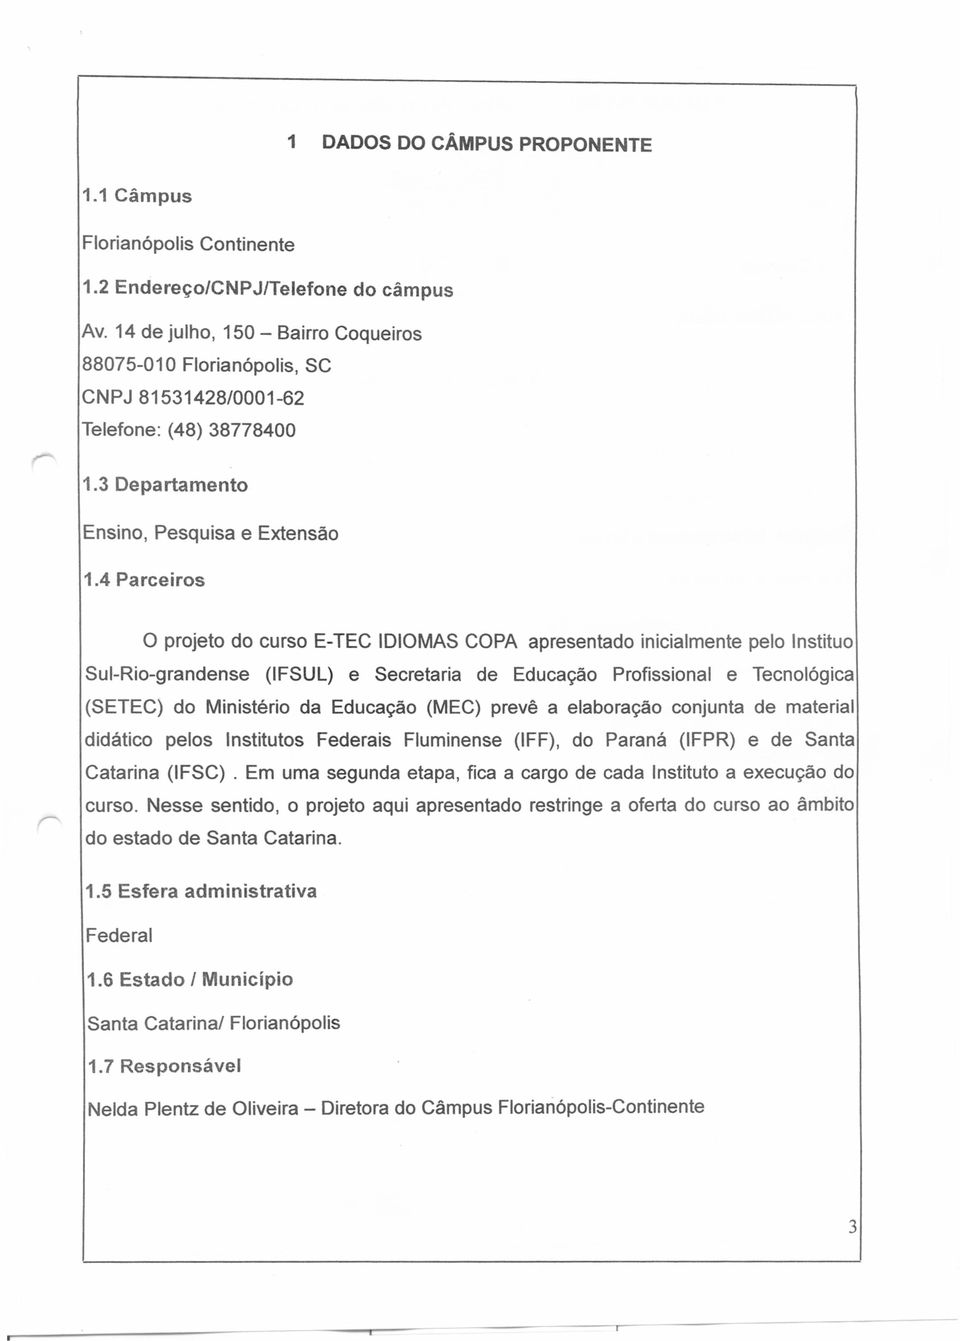 4 Parceiros o projeto do curso E-TEC IDIOMAS COPA apresentado inicialmente pelo Instituo Sul-Rio-grandense (IFSUL) e Secretaria de Educação Profissional e Tecnológica (SETEC) do Ministério da